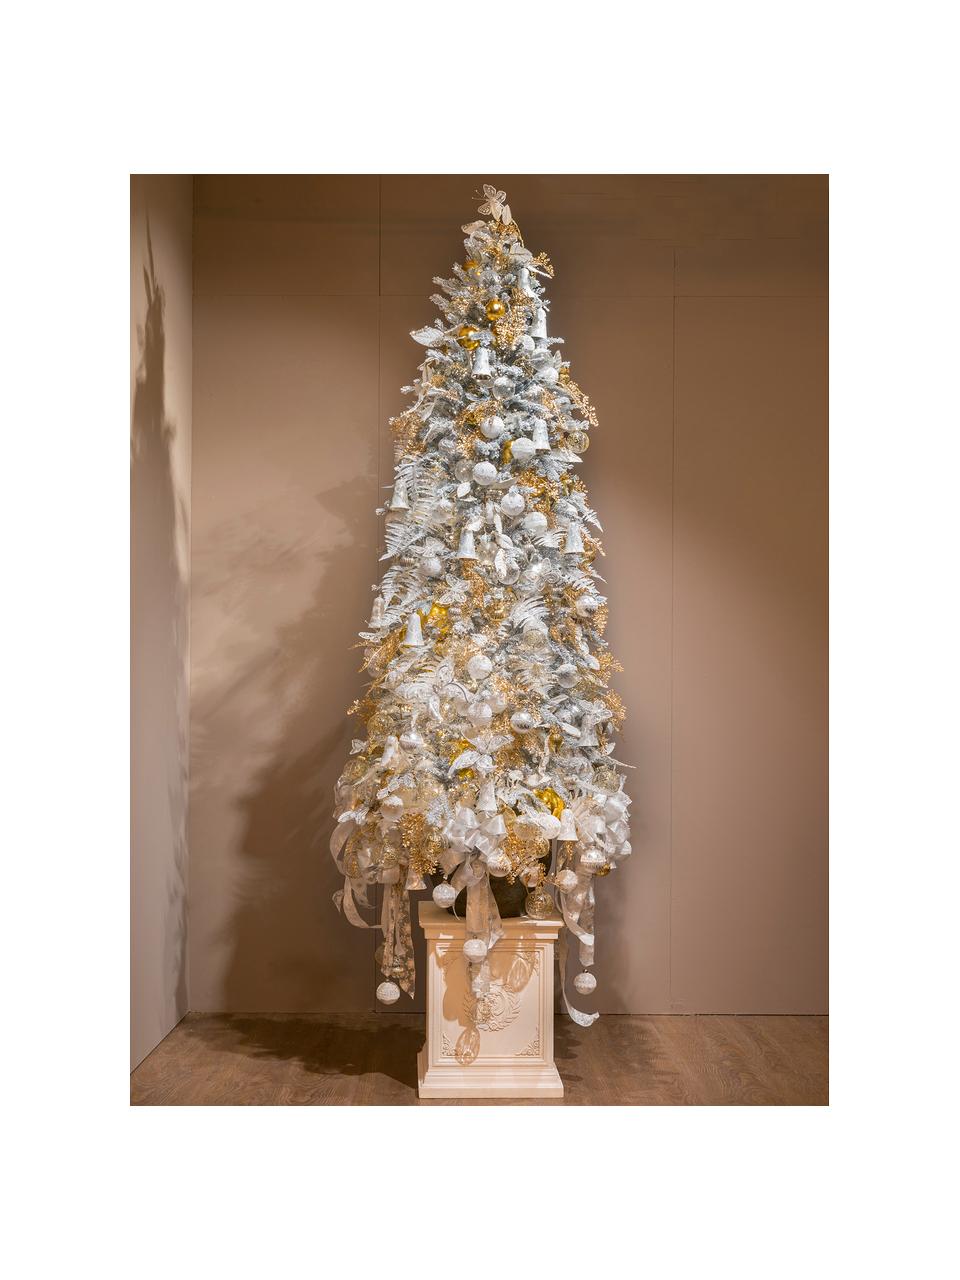 Künstlicher Weihnachtsbaum Pencil H 180 cm beschneit , Grün, Weiss, Ø 50 x H 180 cm